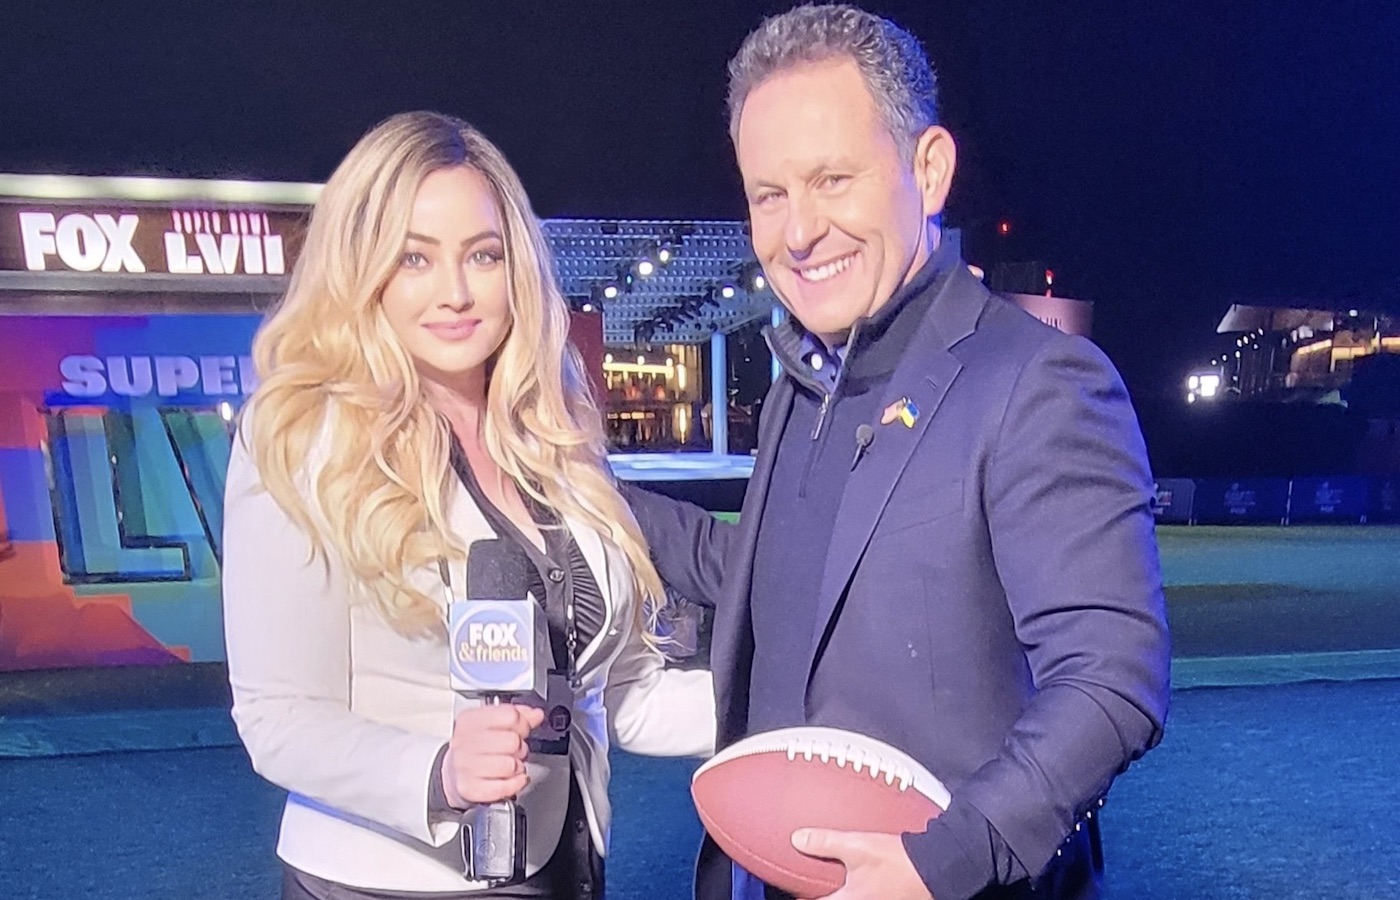 Barbara Zaun and Fox host at Super Bowl